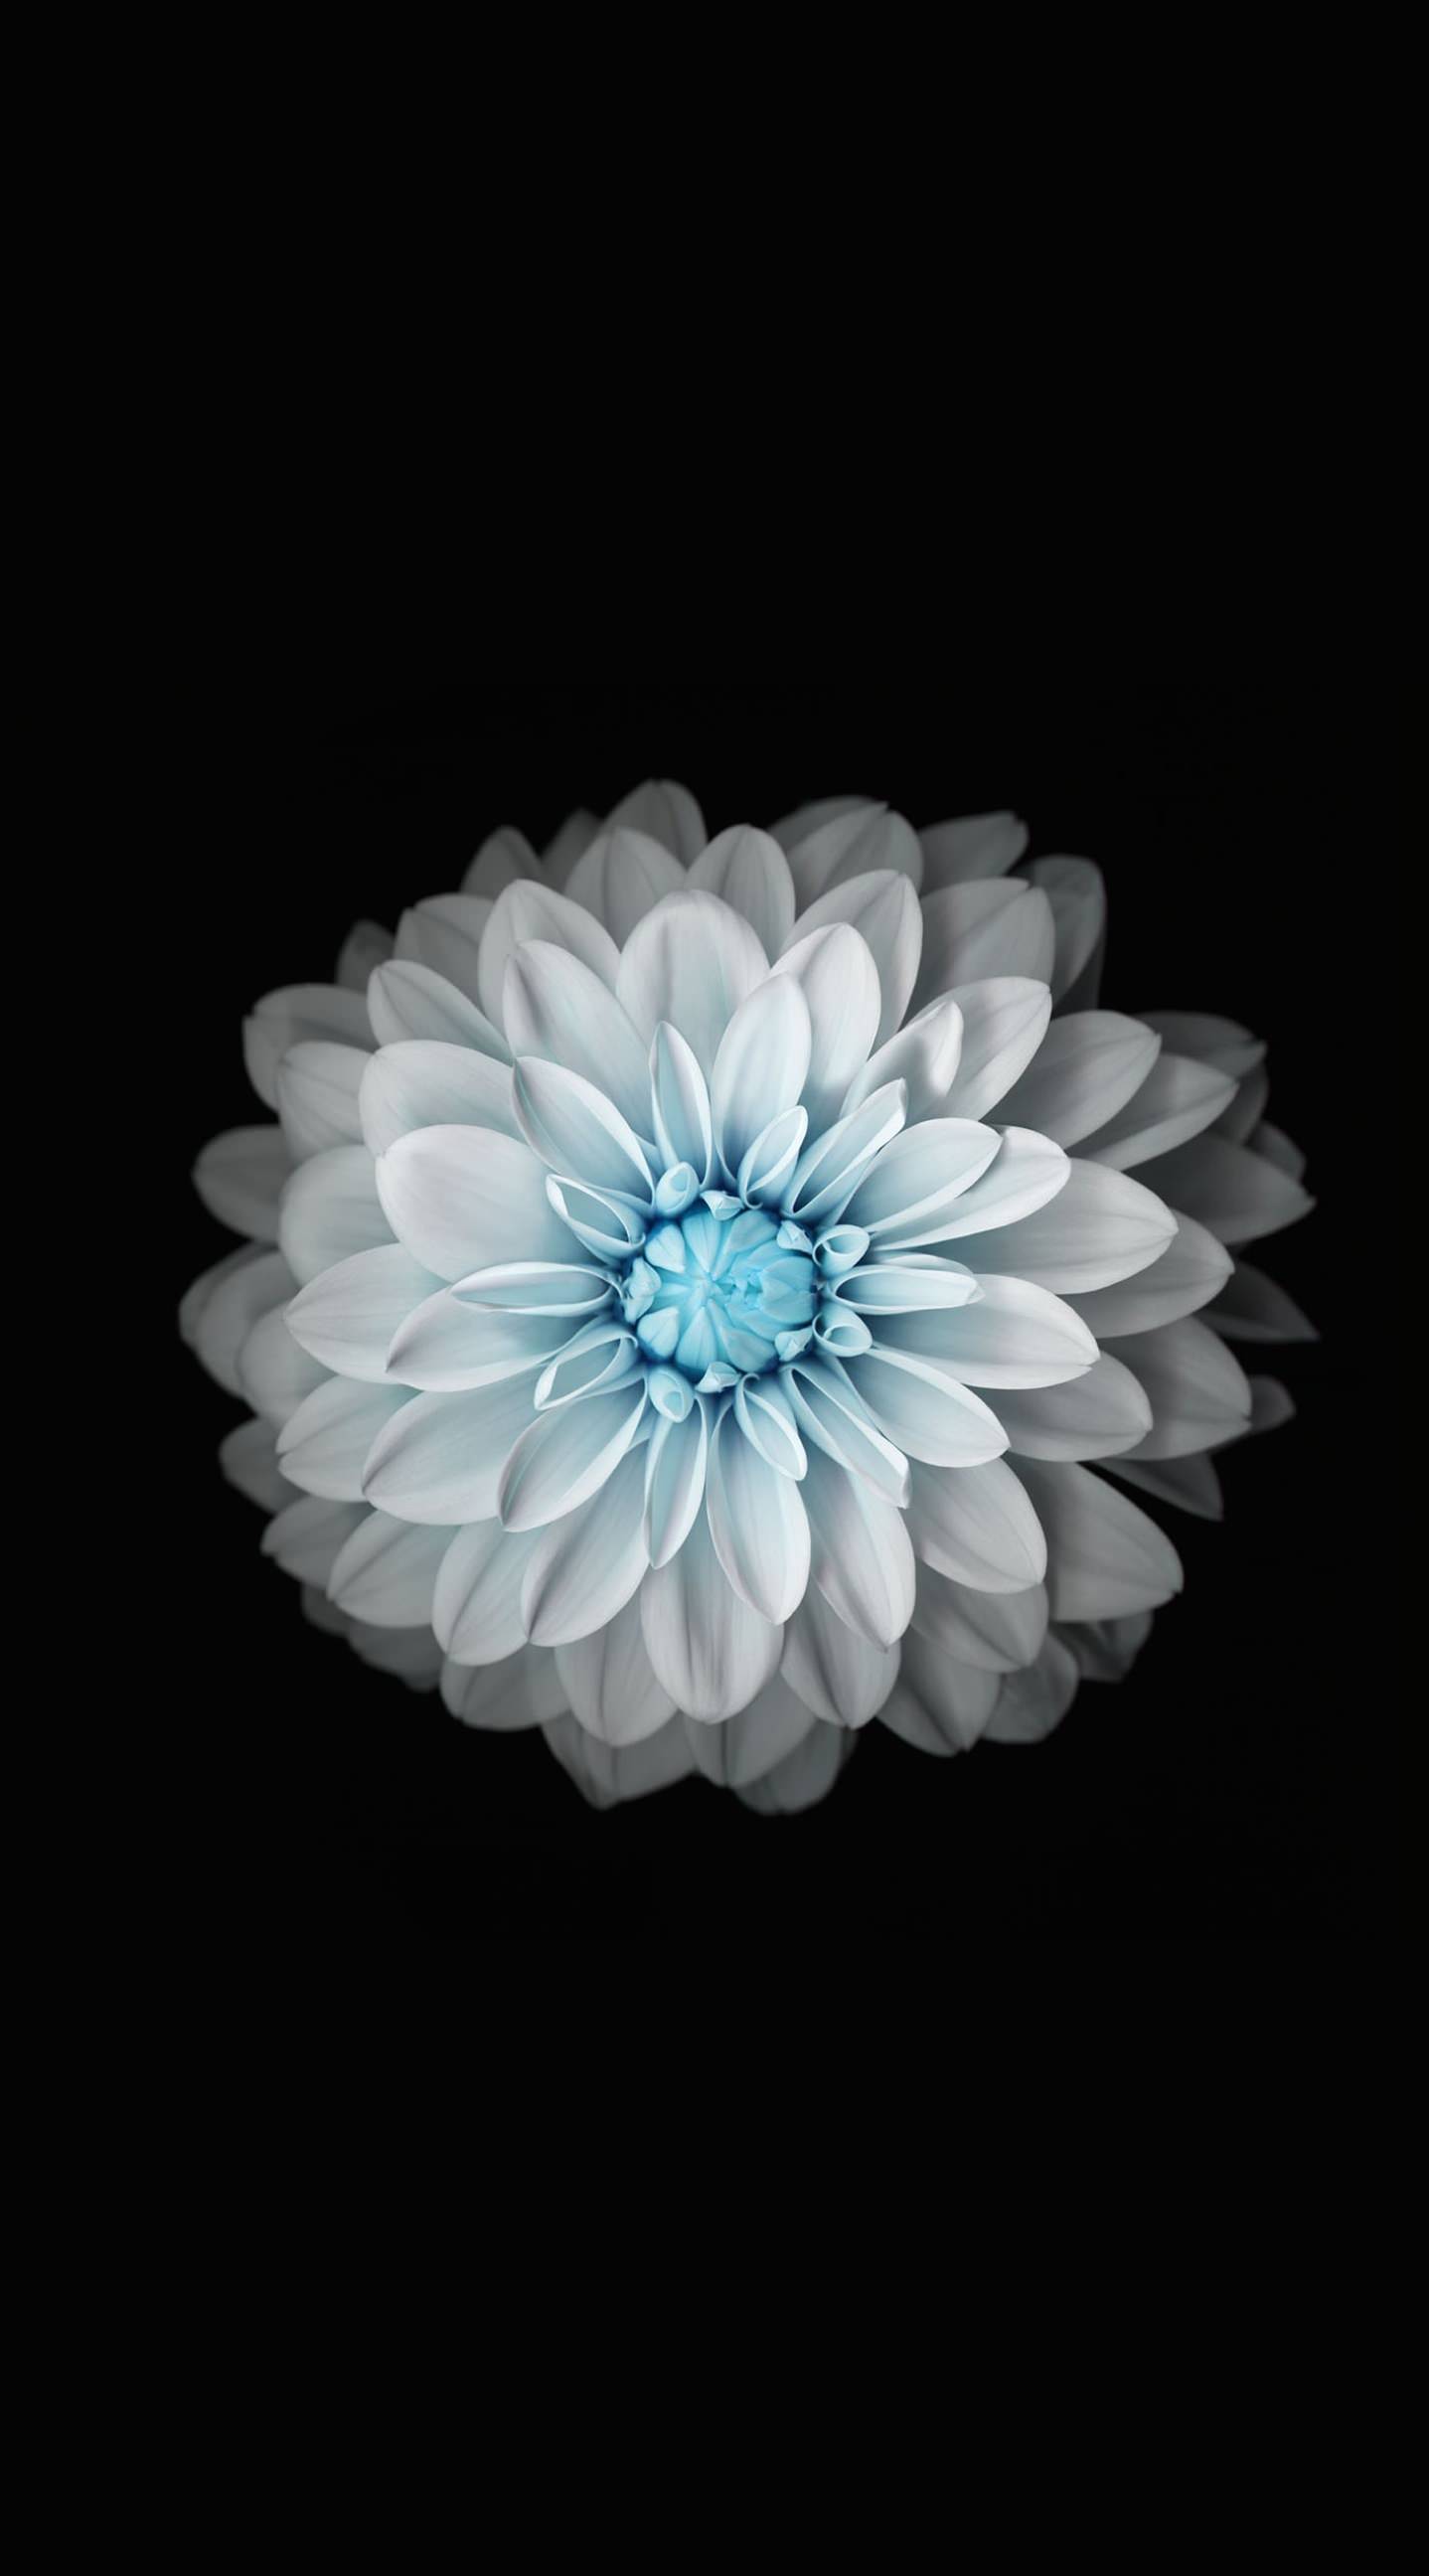 Flower black and white | wallpaper.sc iPhone6sPlus